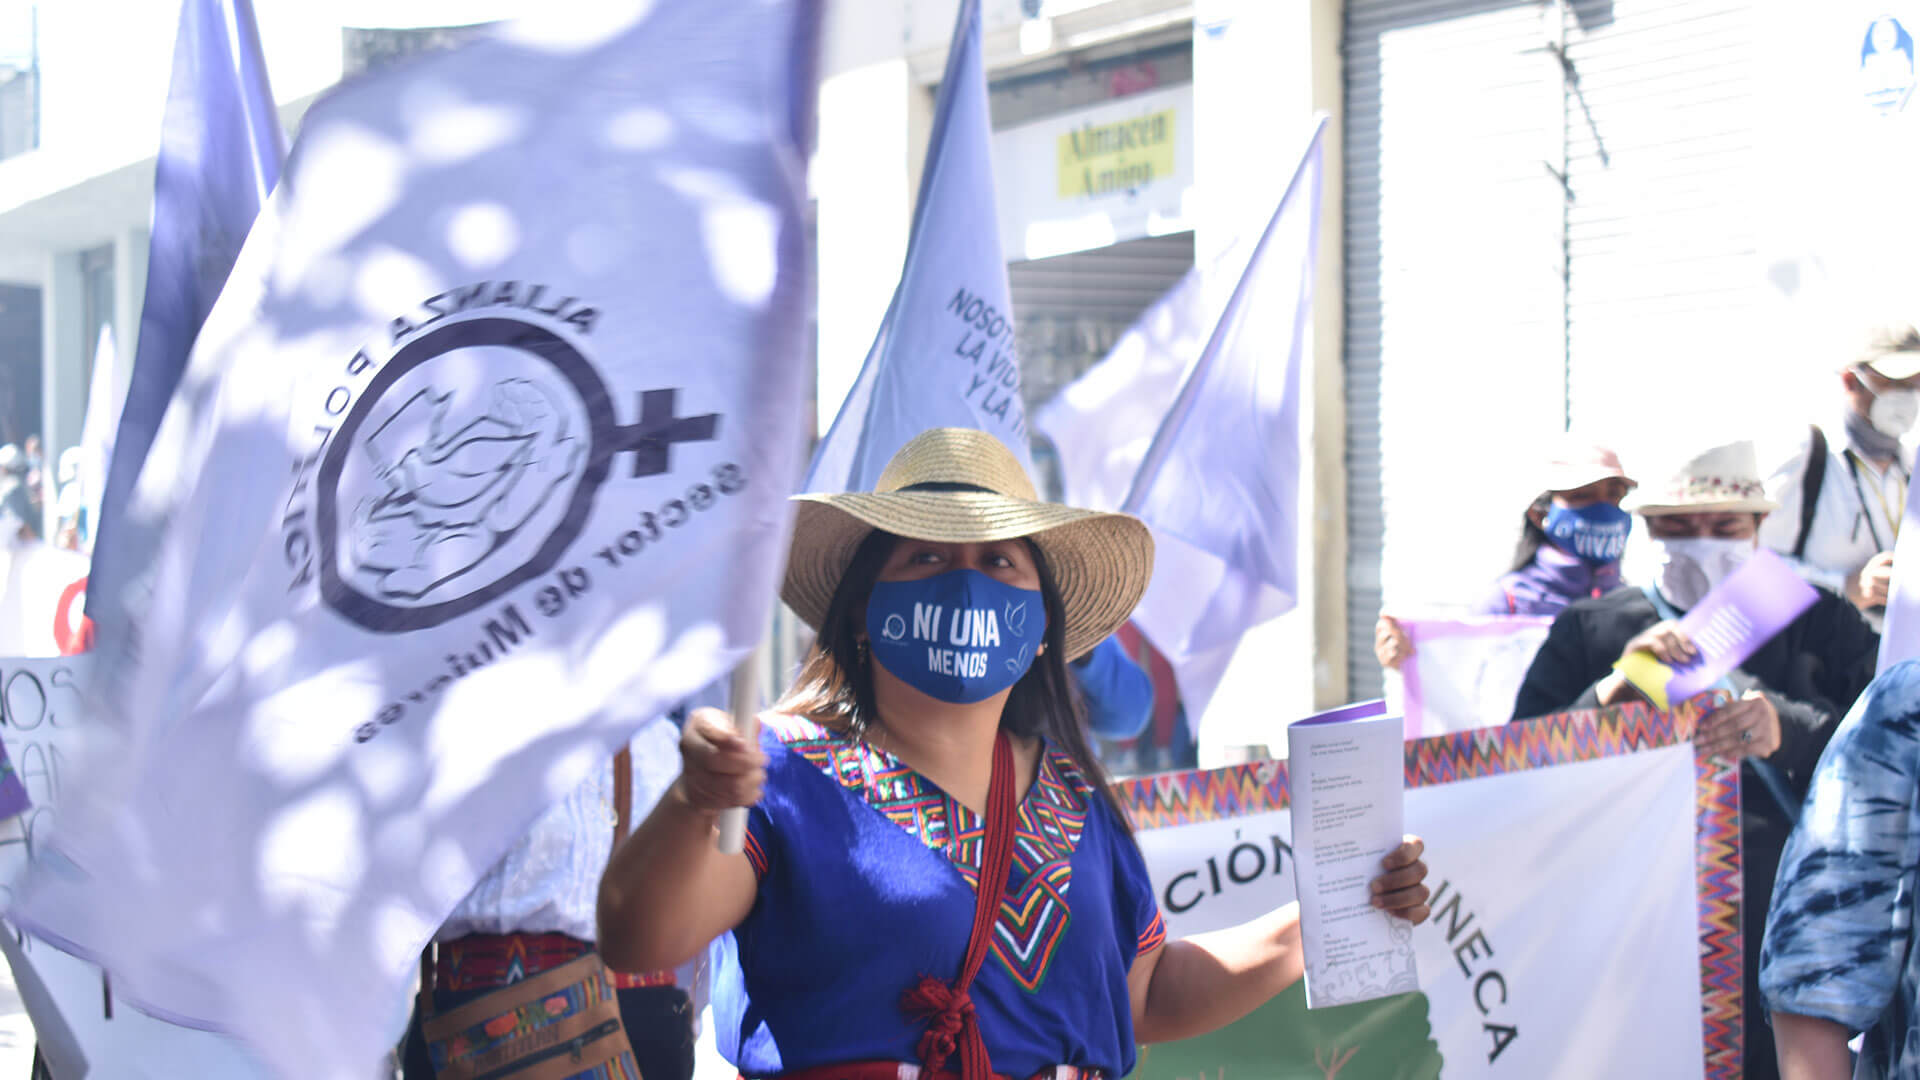 Demonstrierende mit Maske mit der Aufschrift "Ni una menos". Außerdem eine lila Fahne.